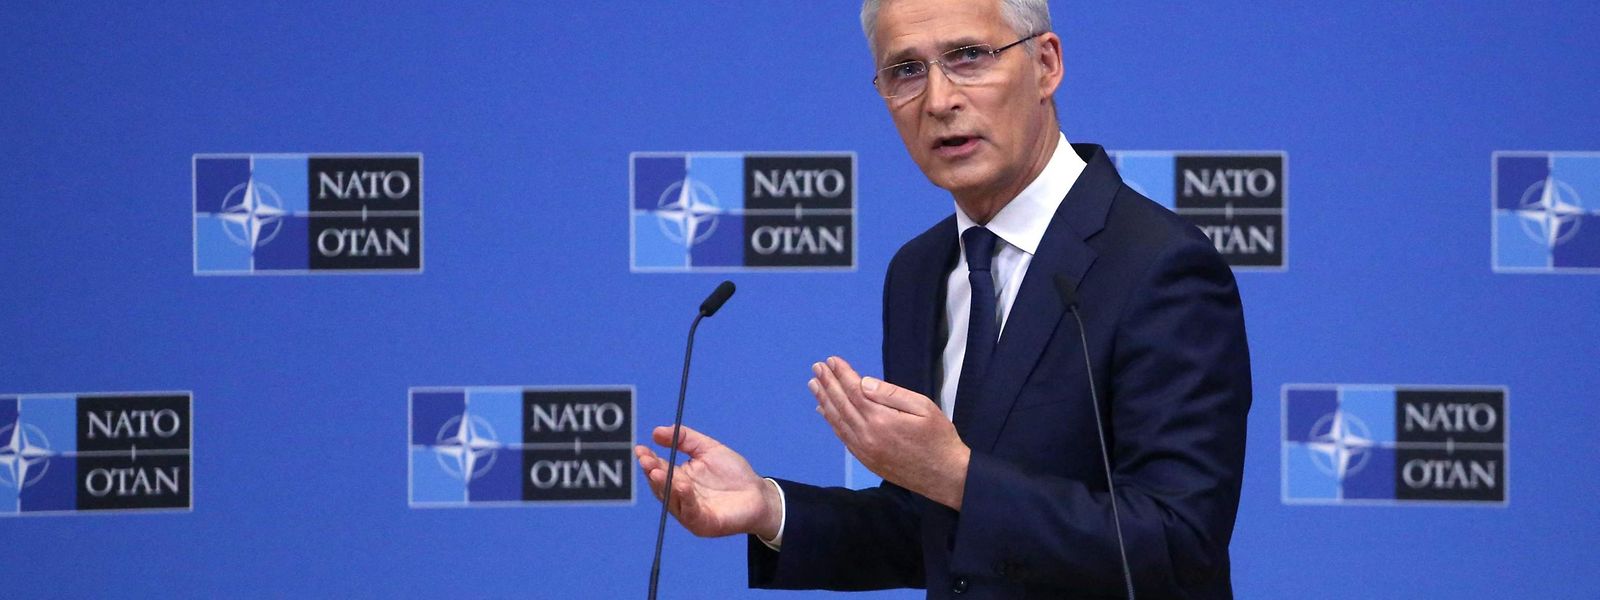 O secretário-geral da NATO, Jens Stoltenberg, anunciou esta terça-feira que a Turquia levantou o seu veto à adesão da Finlândia e da Suécia à Aliança Atlântica, após a assinatura de um memorando que “responde às preocupações” de Ancara.